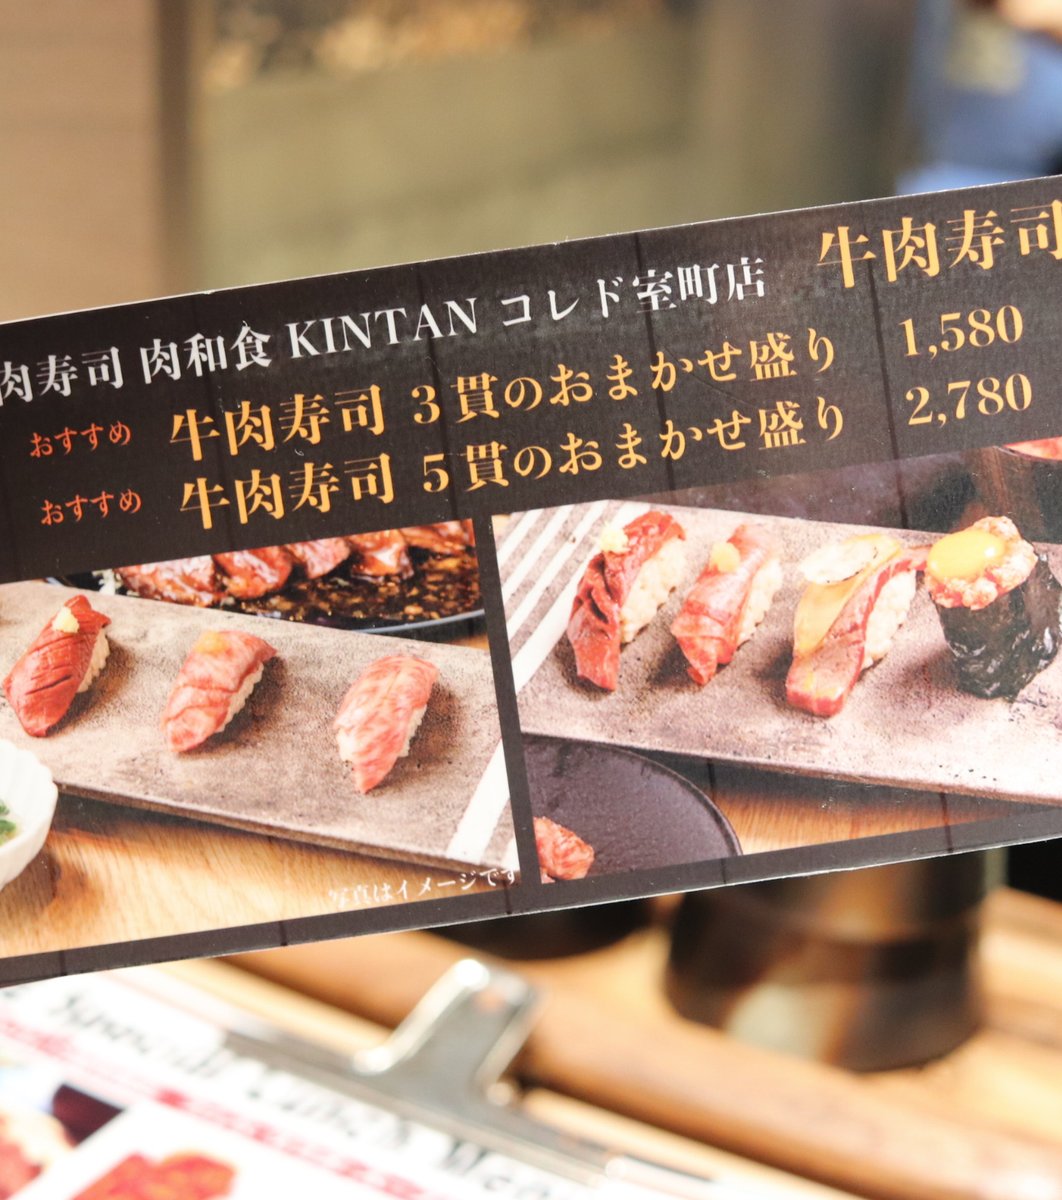 ランチなら高級肉もお得に楽しめる コレド室町の高級肉寿司kintan 和牛焼肉も Playlife プレイライフ